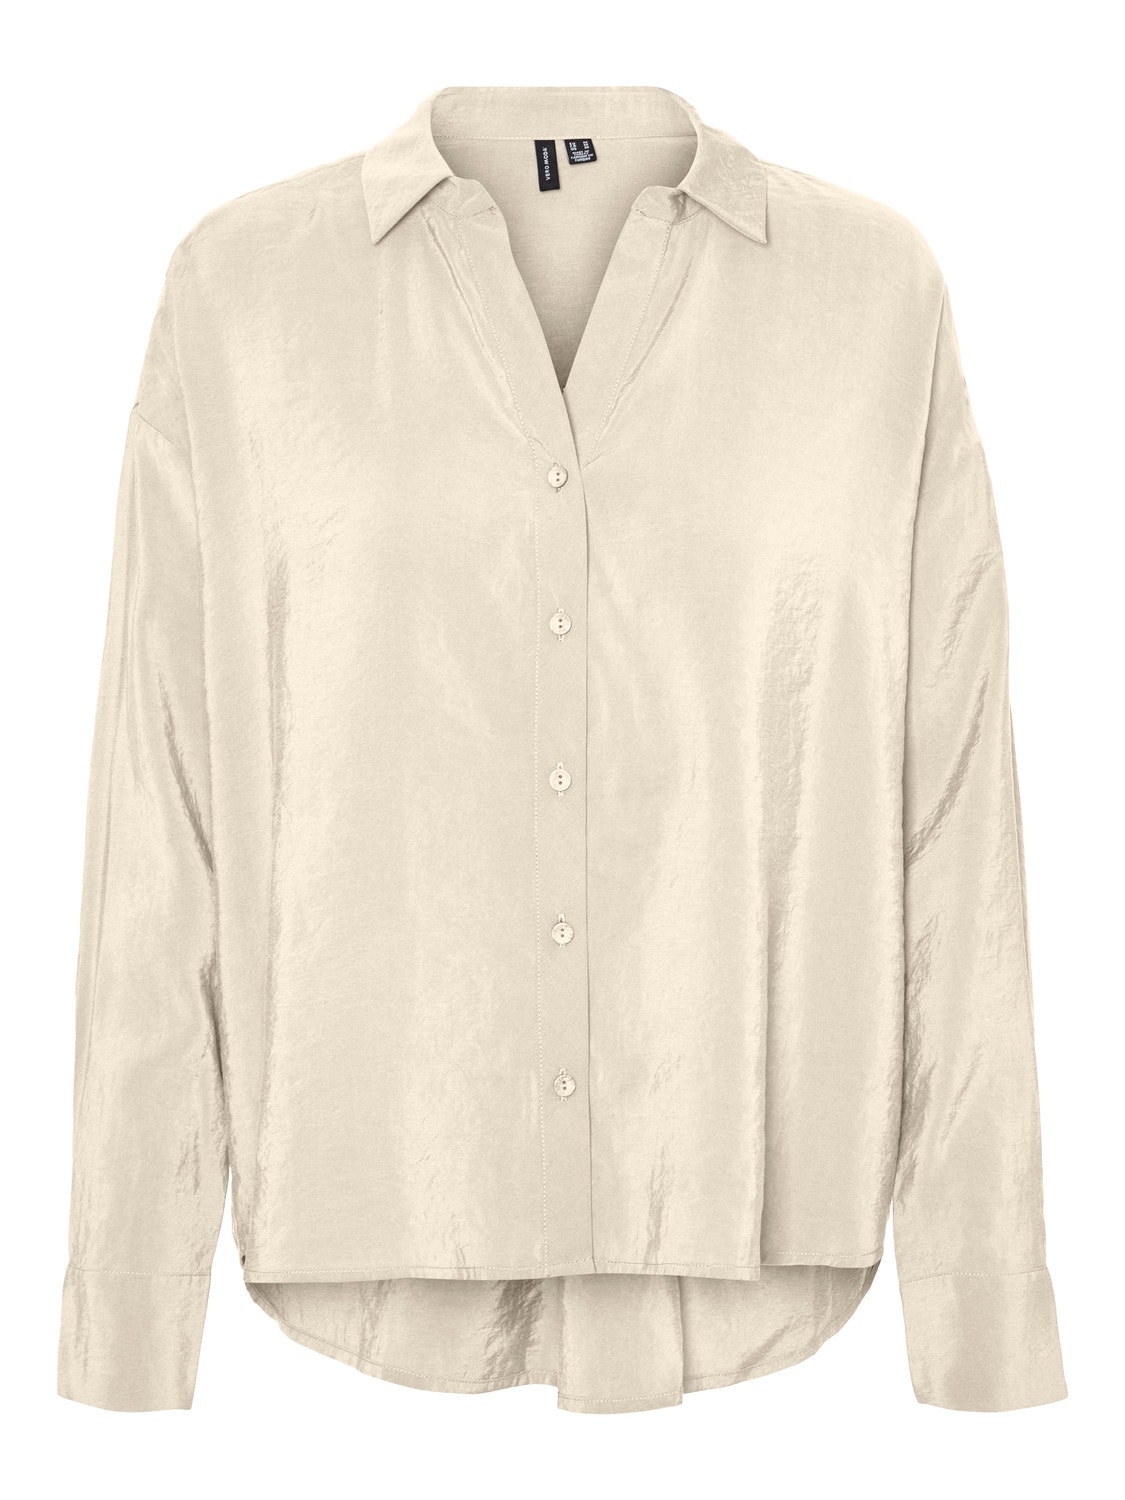 Vero Moda VMQUEENY Shirt -Antique White - 10289349